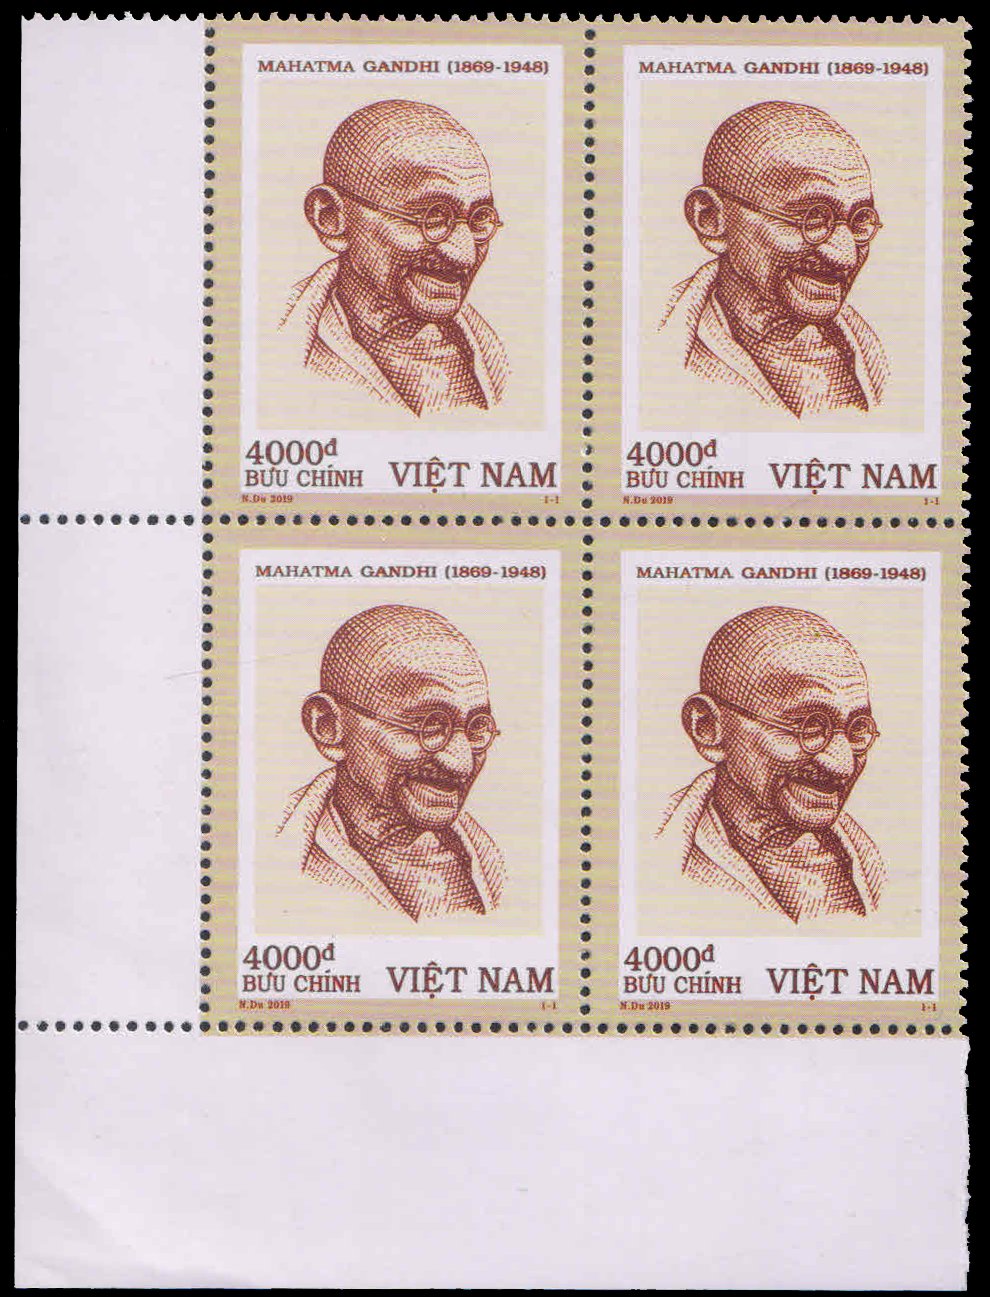 VIETNAM 2019-150th Birth Anniversary of Mahatma Gandhi, Block of 4, MNH